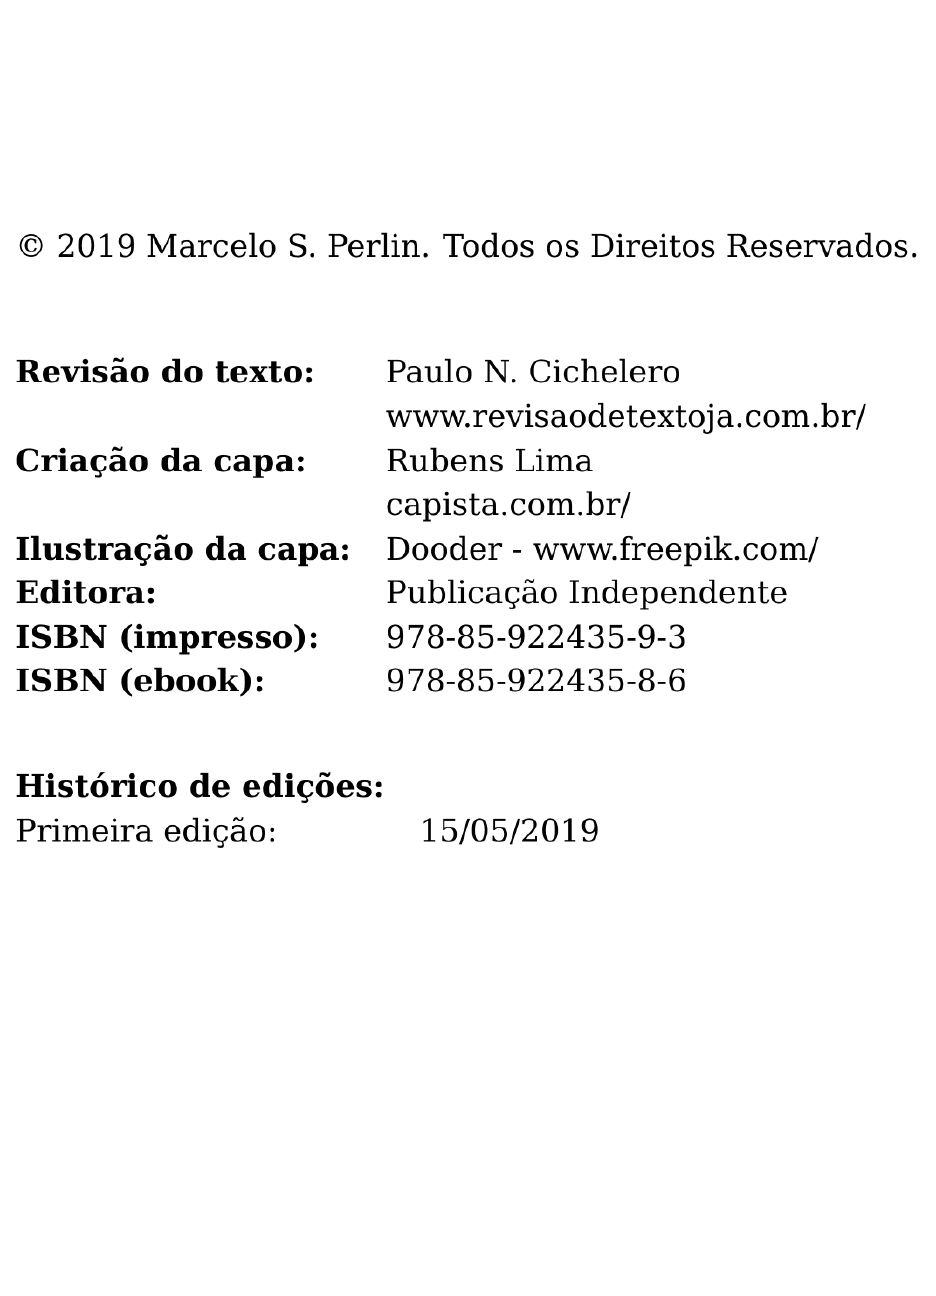 Poupando e Investindo em Renda Fixa: Uma Abordagem Baseada em Dados  (Portuguese Edition): Perlin, Marcelo S.: 9788592243593: : Books